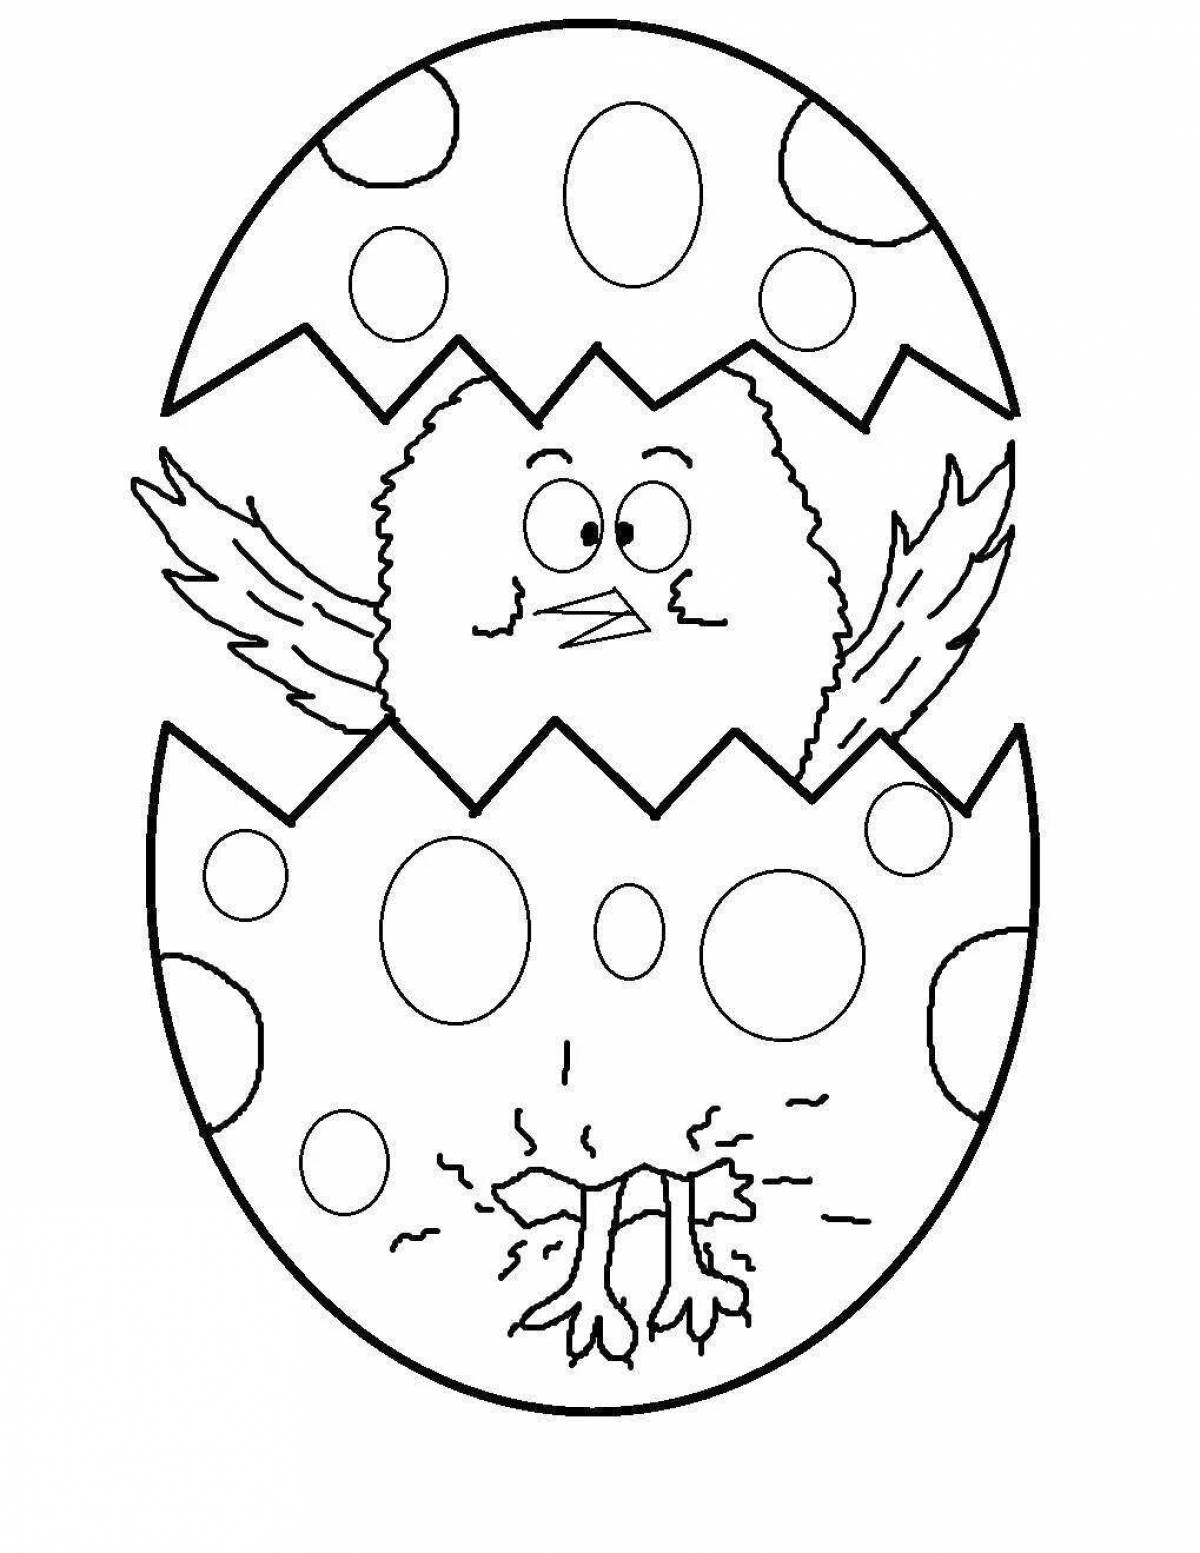 Распечатка пасхального яйца